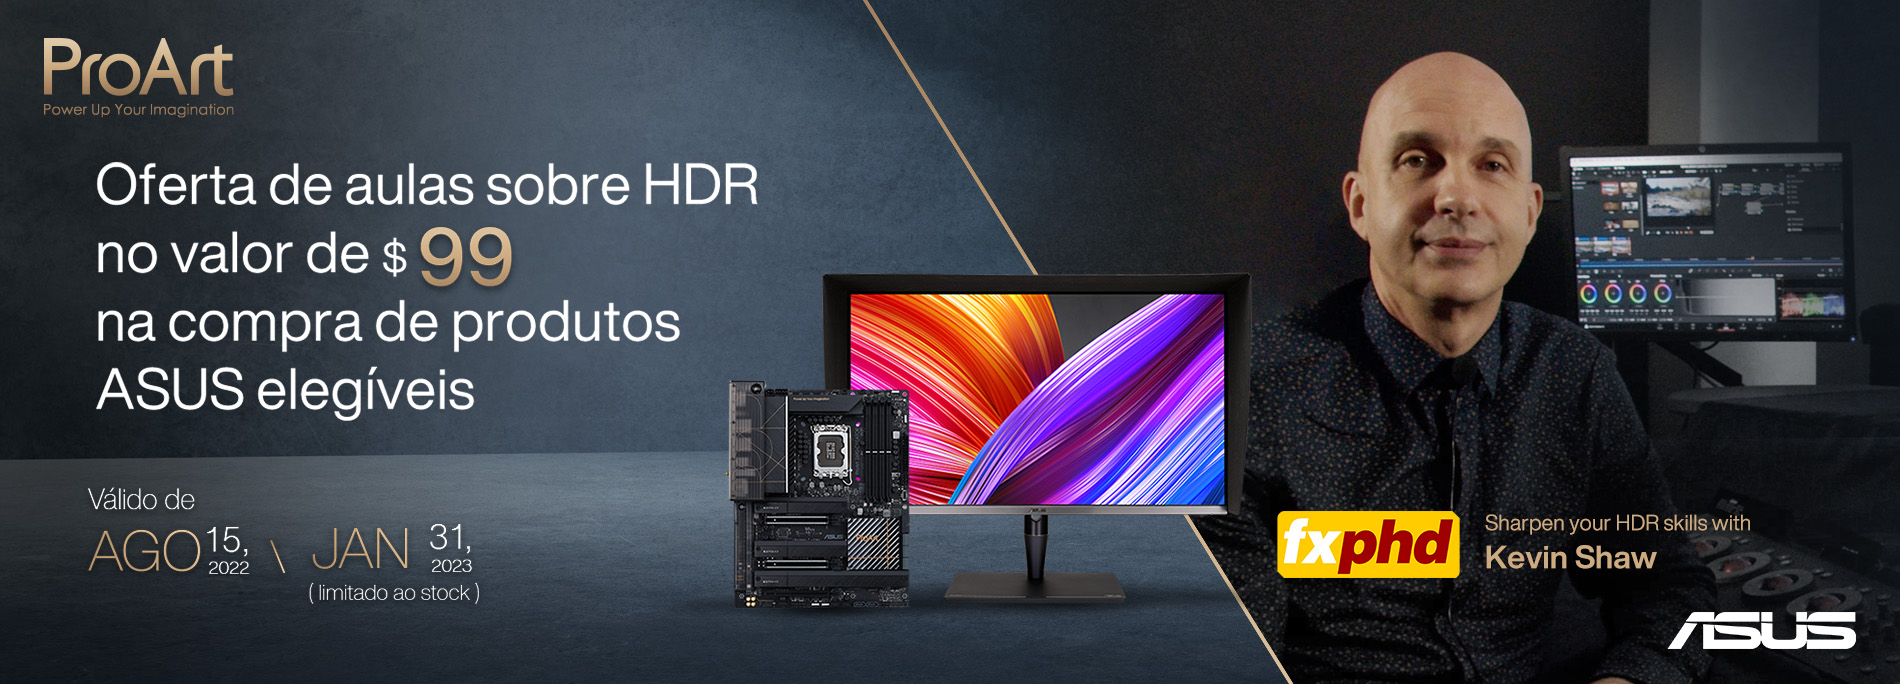 ASUS x fxphd - Oferta de aulas de HDR na compra de produtos elegíveis